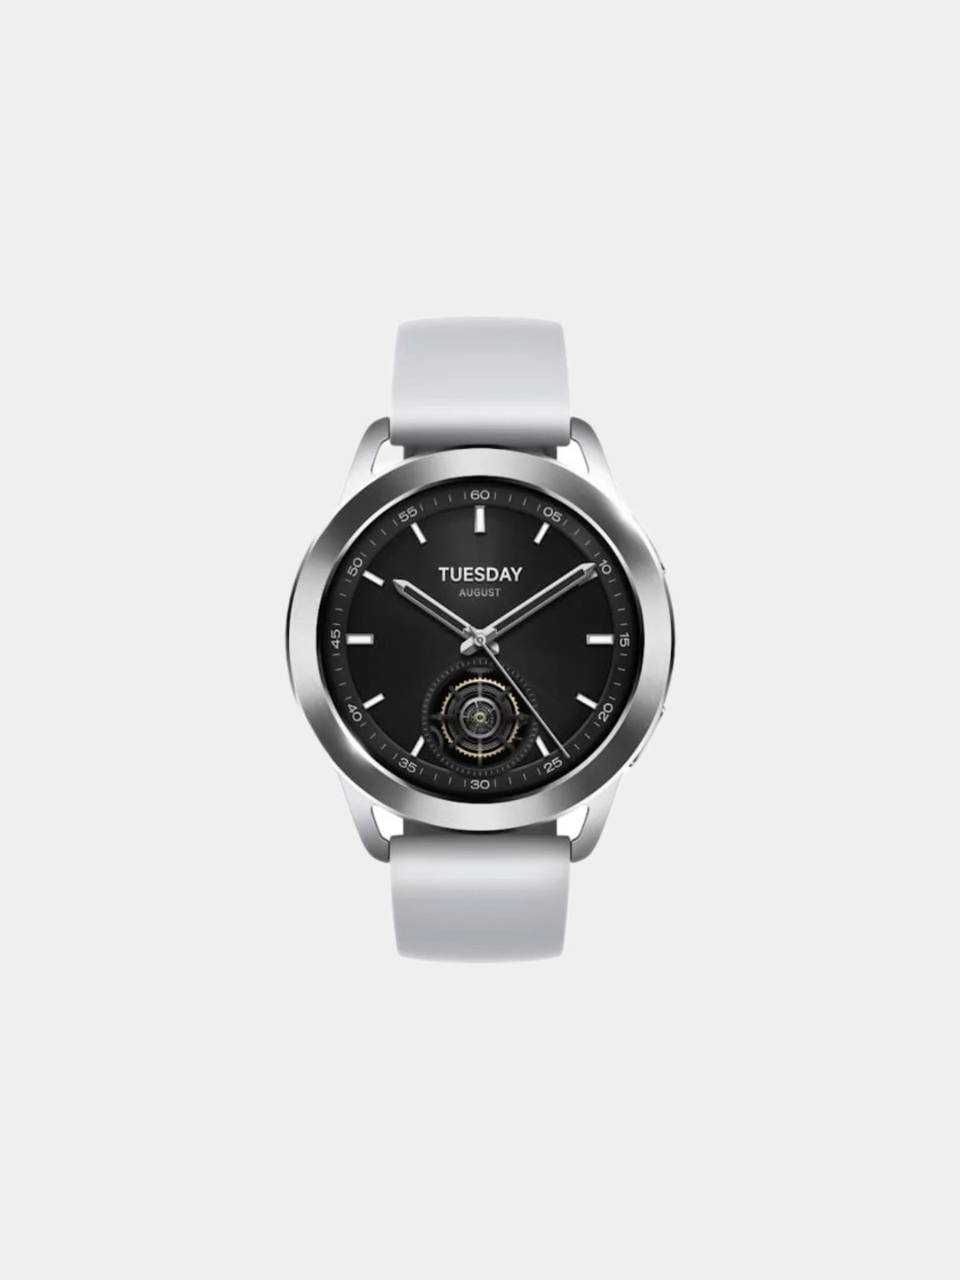 Спортивные часы, умные часы, смарт чвсы Xiaomi Watch S3